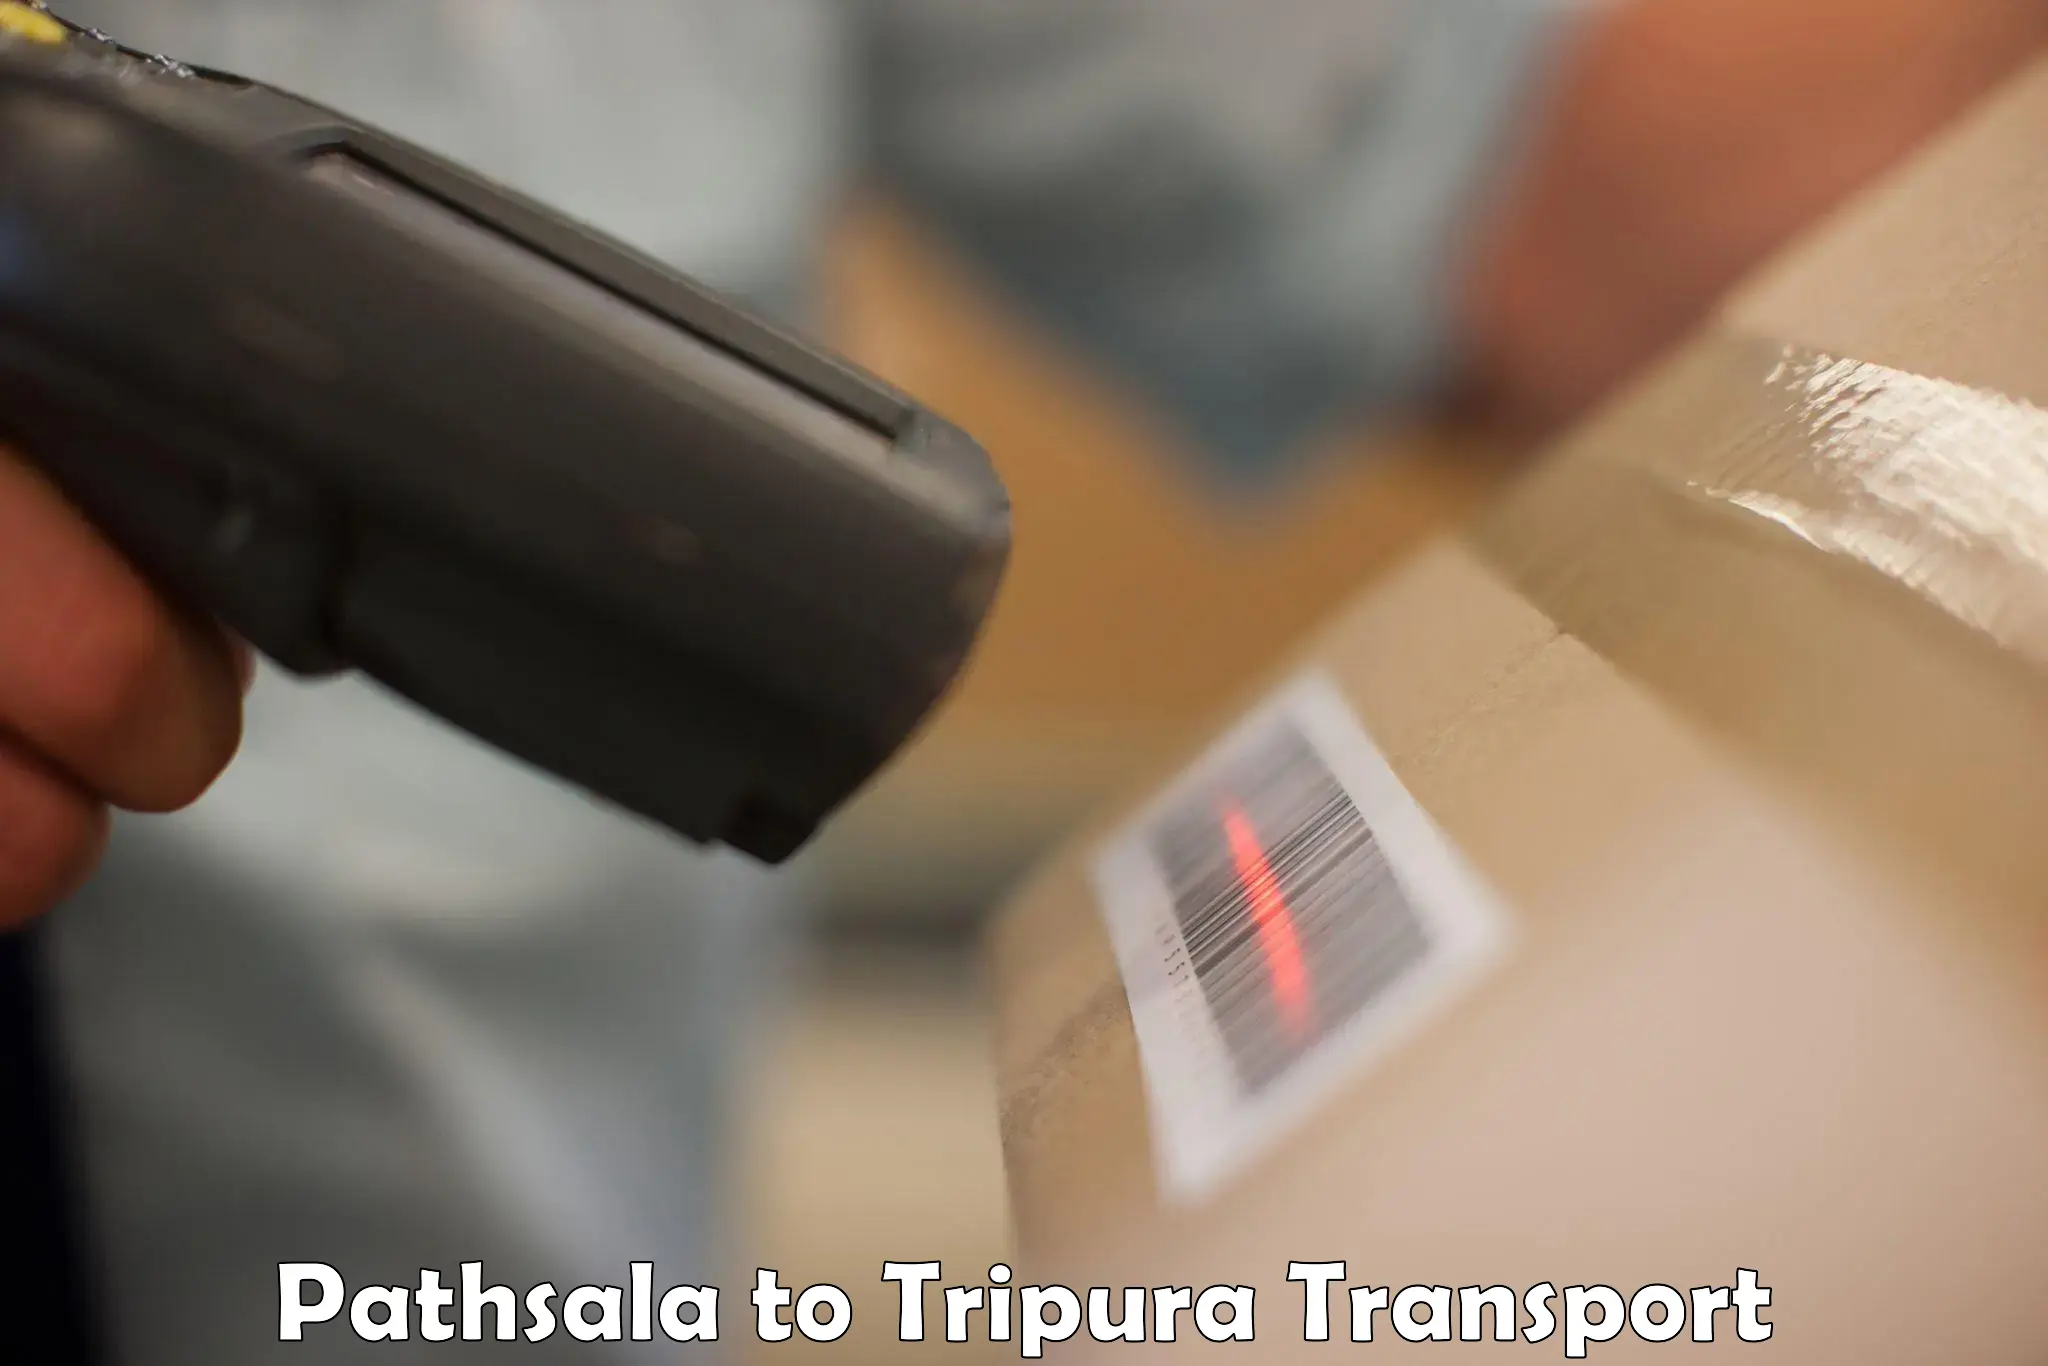 Nearby transport service Pathsala to IIIT Agartala